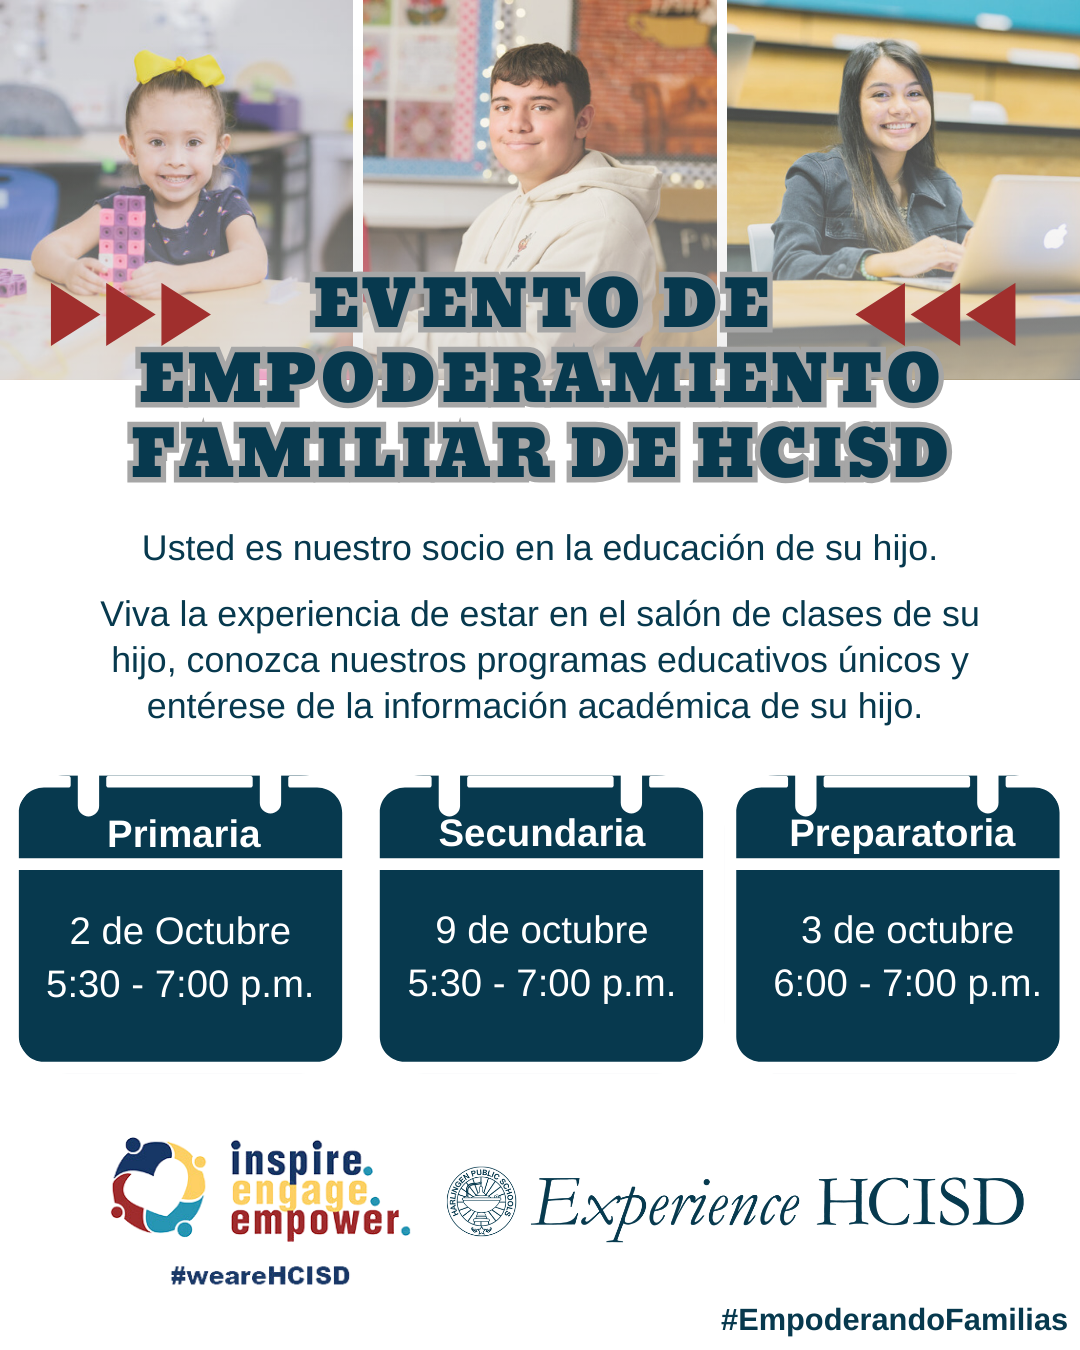 Evento de Empoderamiento Familiar de HCISD.